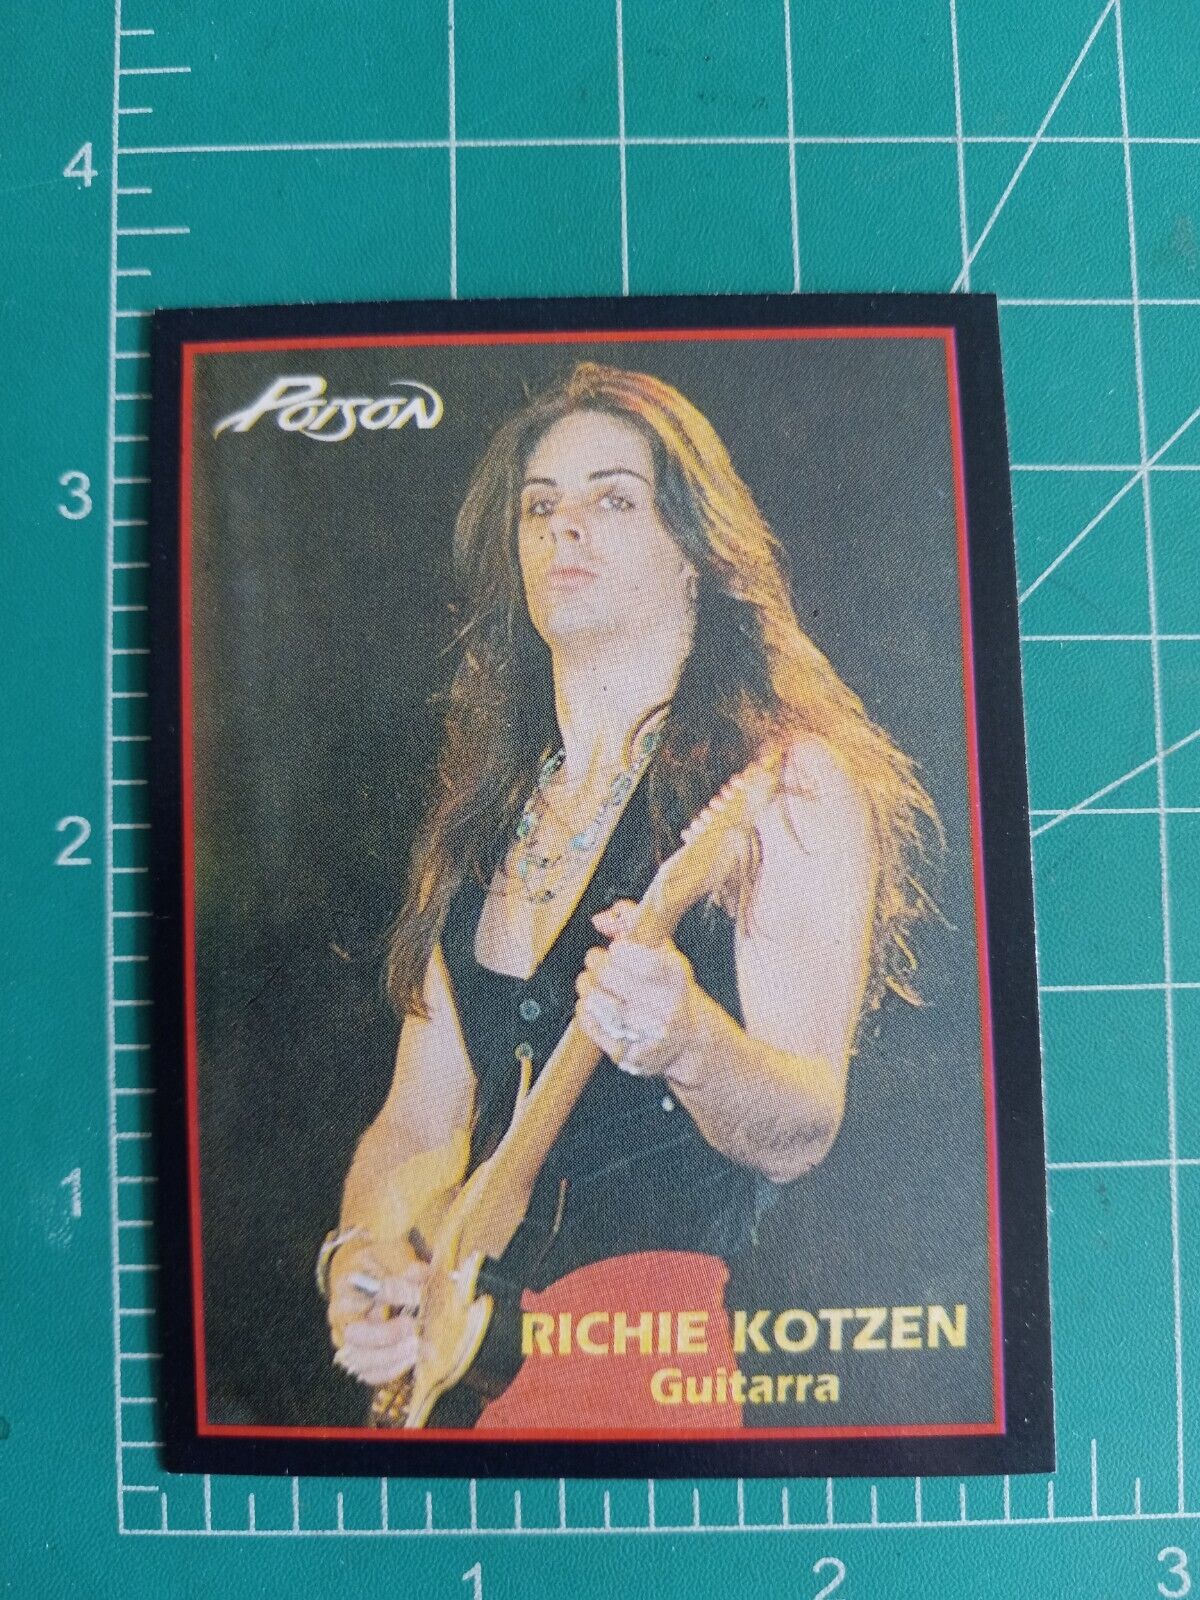 1994 ULTRA FIGUS ARGENTINA ROCK CARDS POISON CARD RICHIE KOTZEN